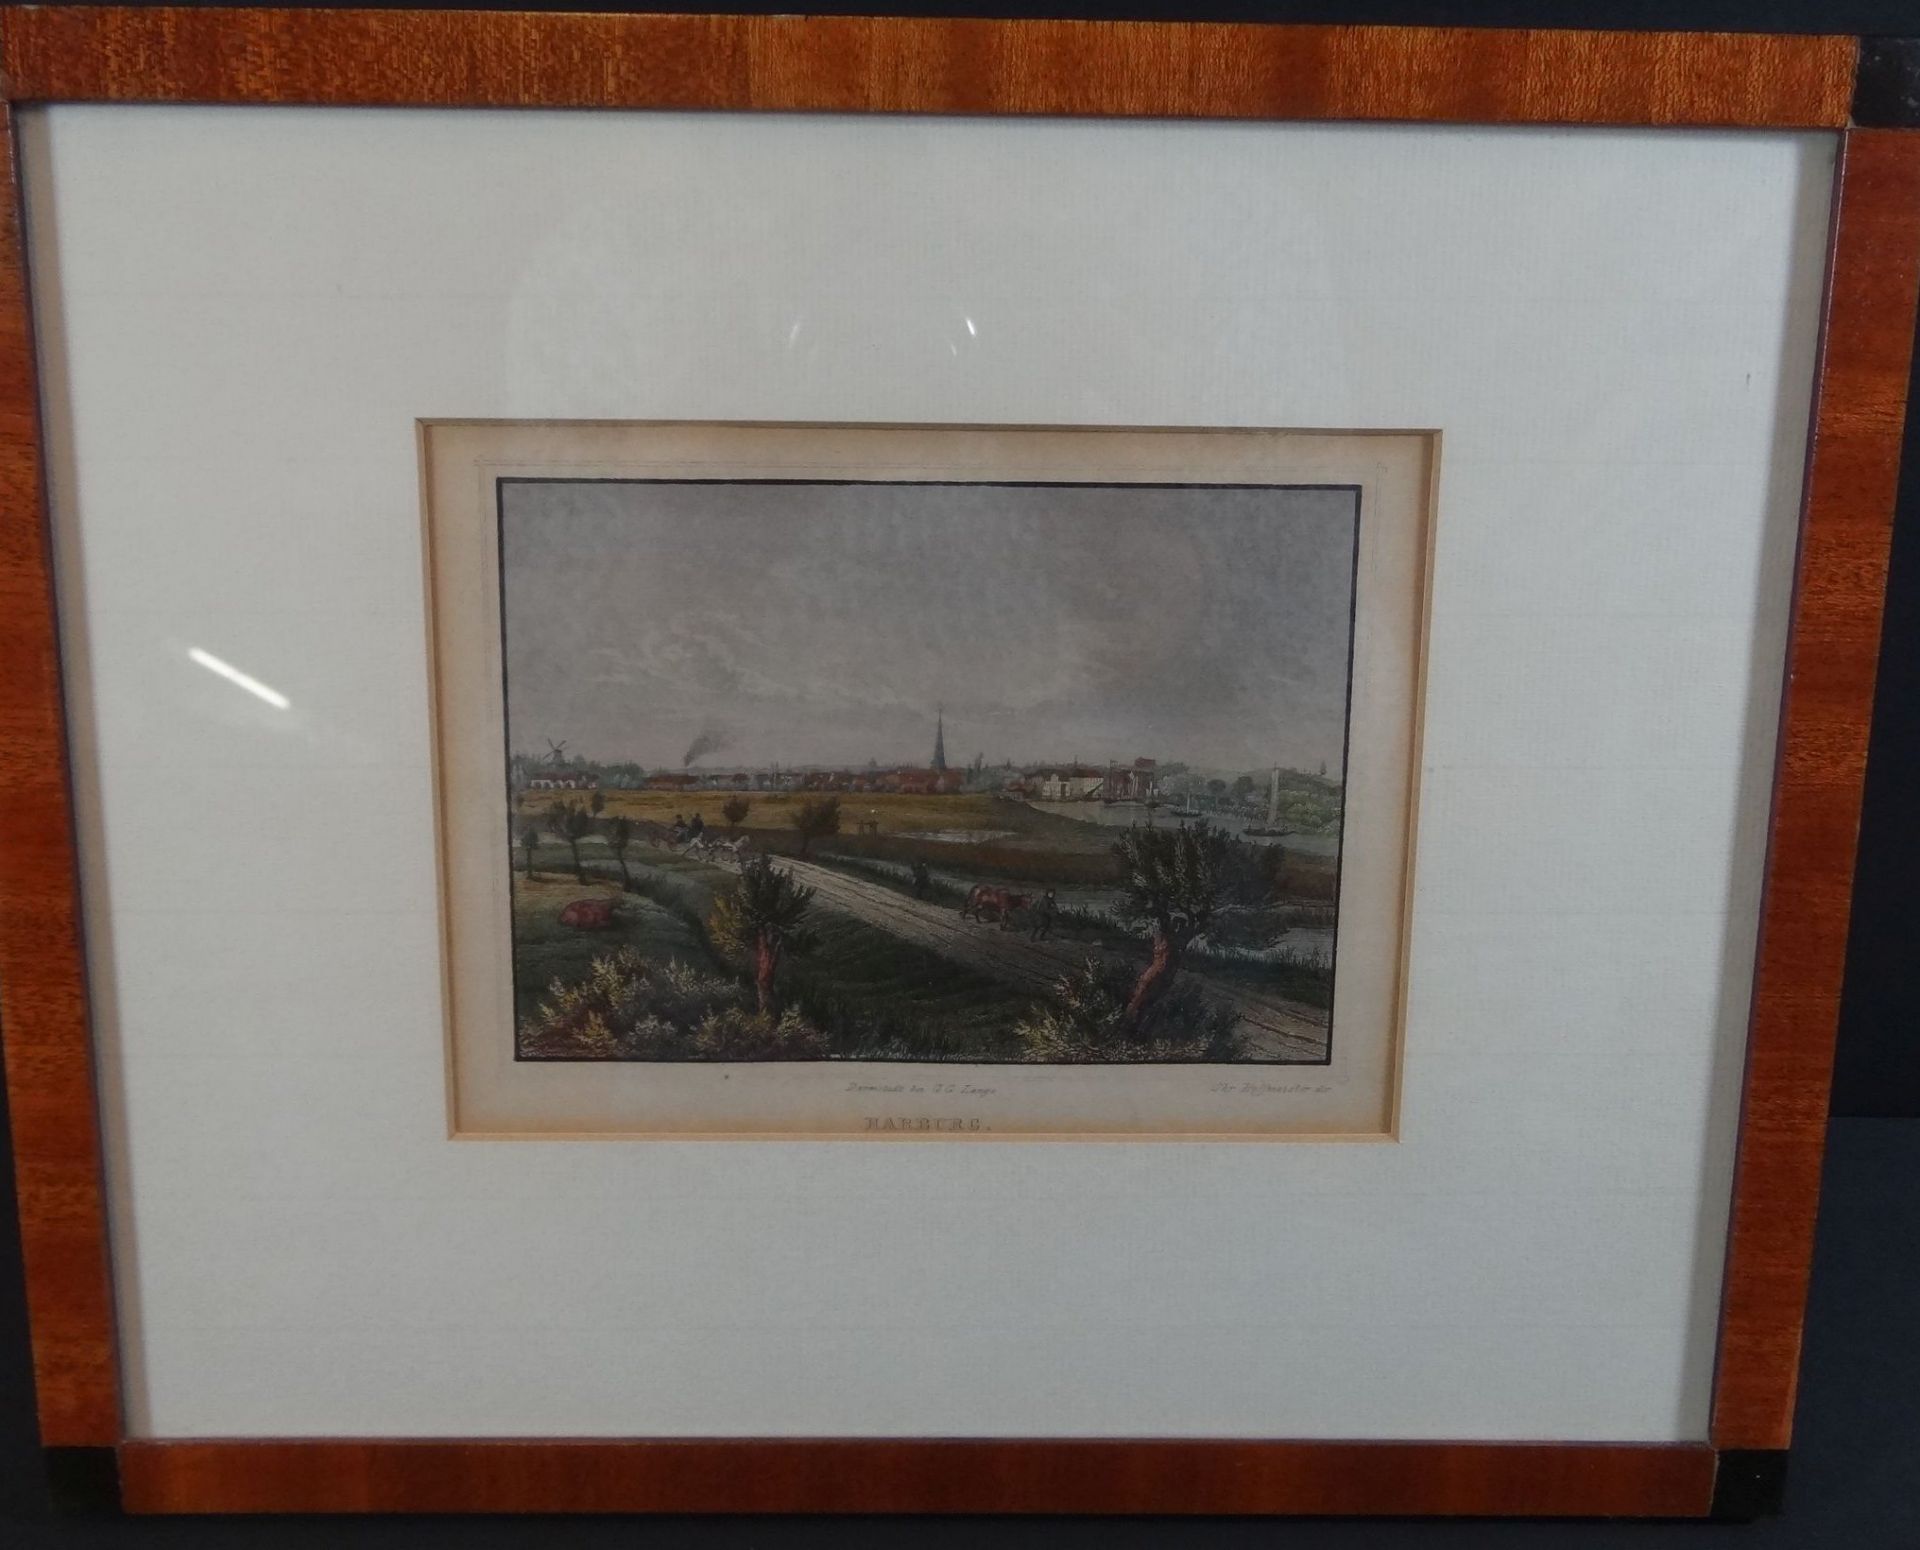 5x Ansichtenstiche um 1840, Hamburg und umzu, koloriert und gut gerahmt, RG je 26x32 cm, - Image 14 of 19